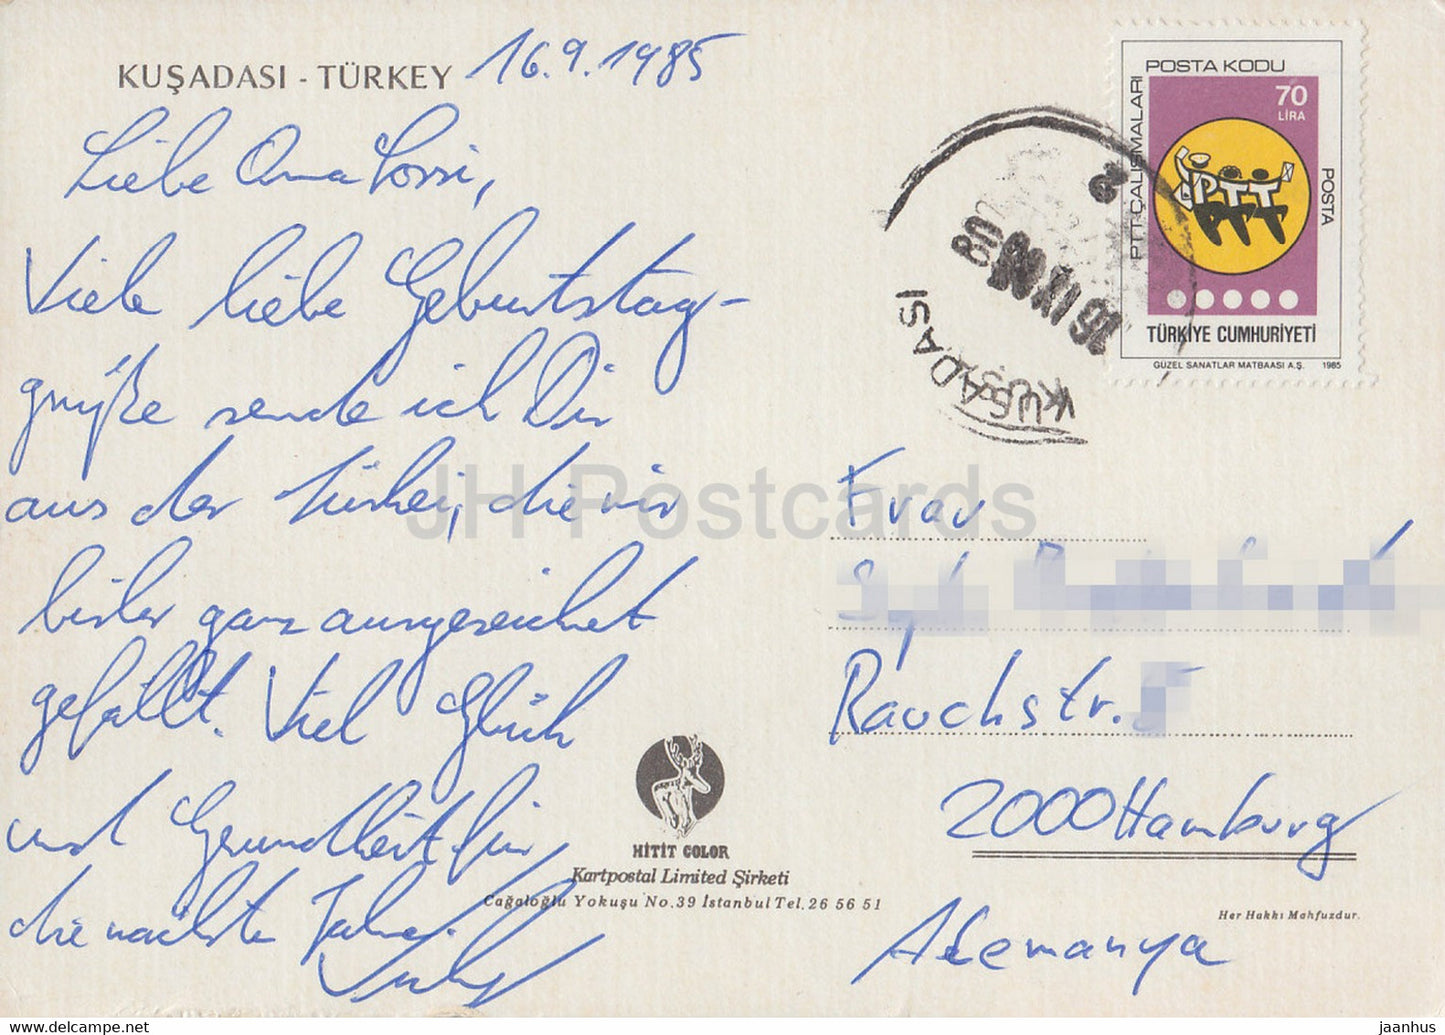 Kusadasi - port - bateau - 1985 - Turquie - occasion